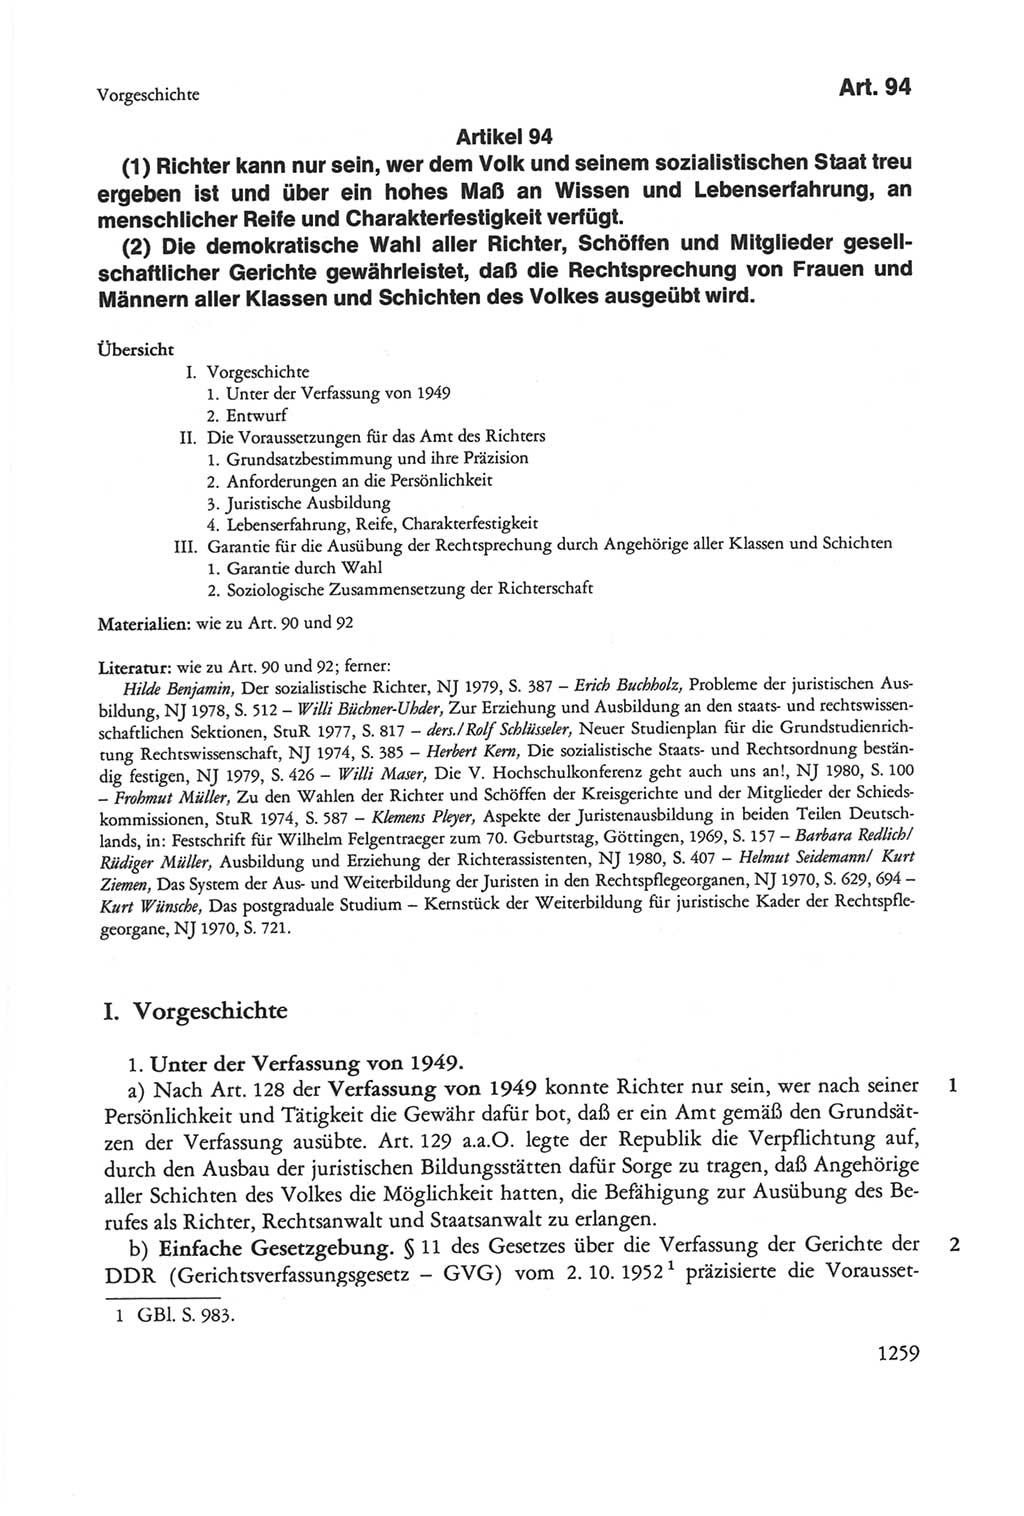 Die sozialistische Verfassung der Deutschen Demokratischen Republik (DDR), Kommentar mit einem Nachtrag 1997, Seite 1259 (Soz. Verf. DDR Komm. Nachtr. 1997, S. 1259)